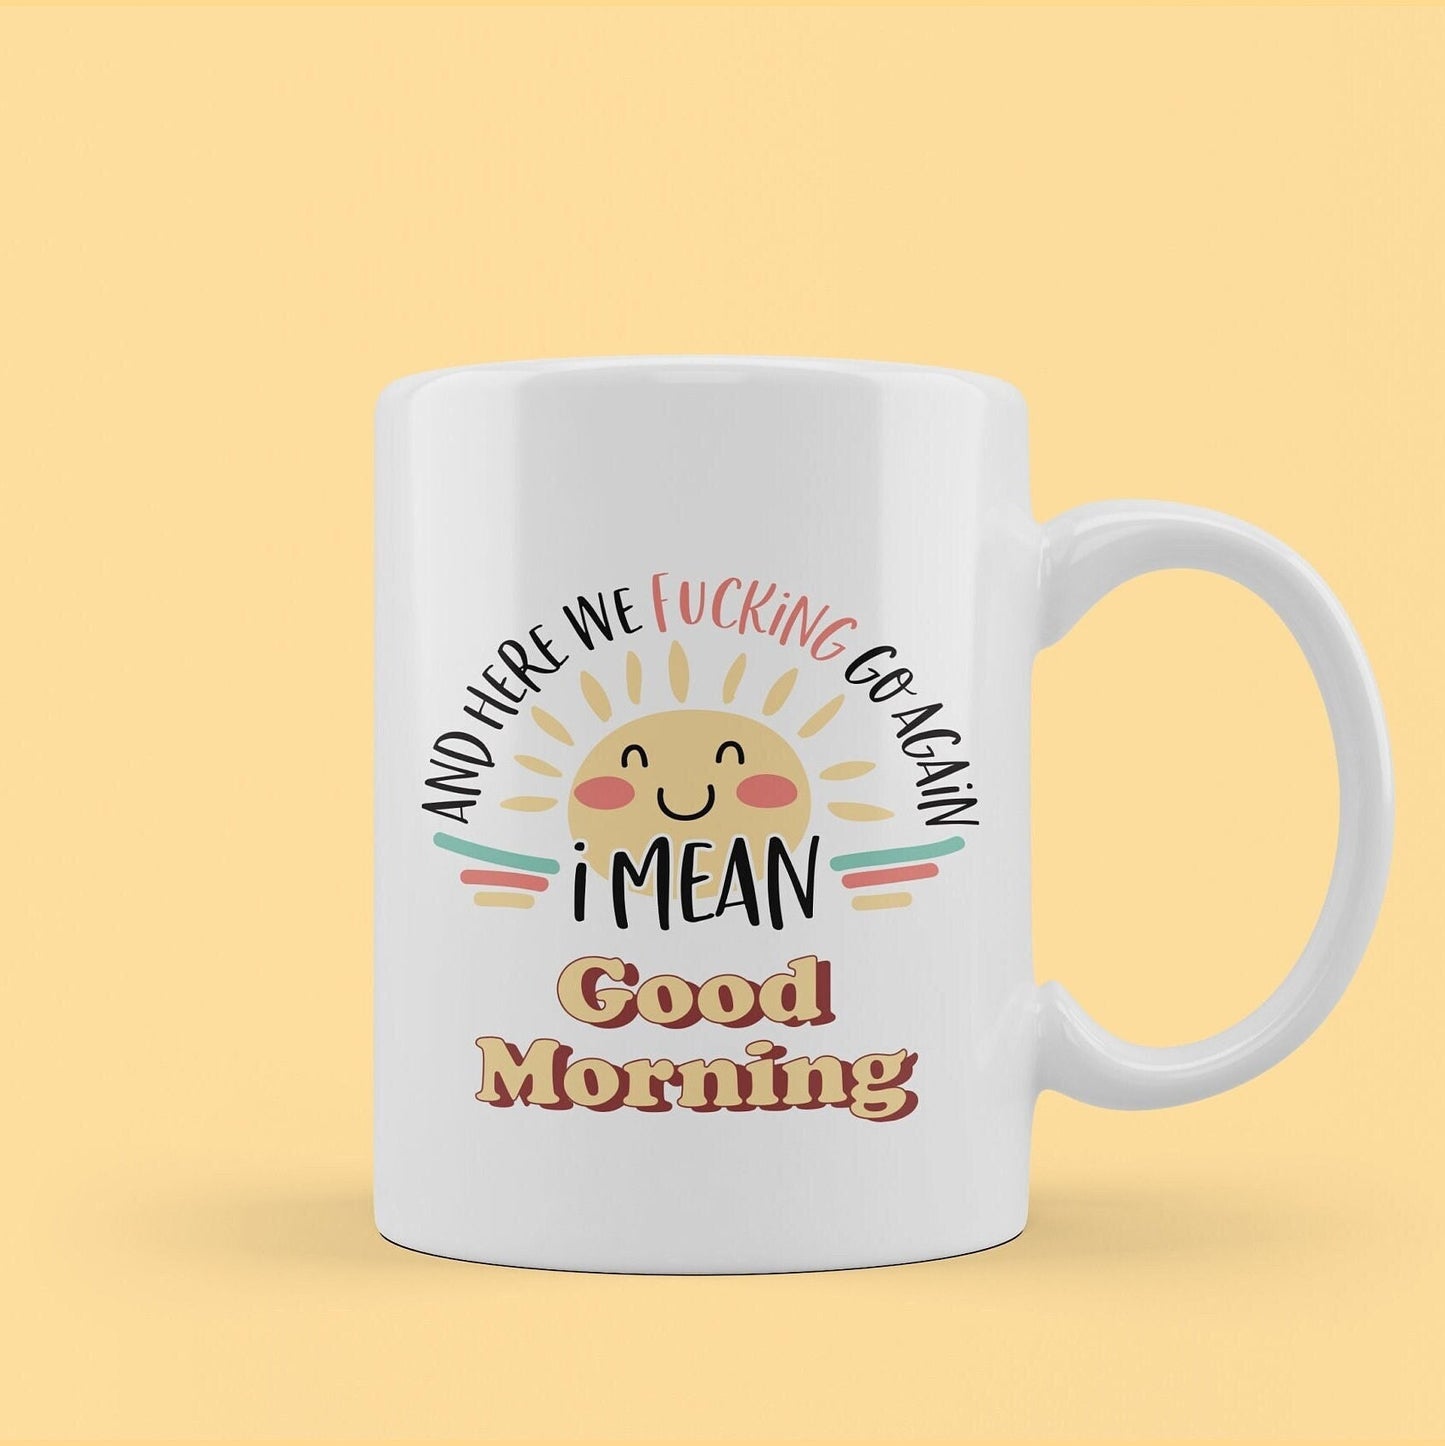 good morning coffee mug